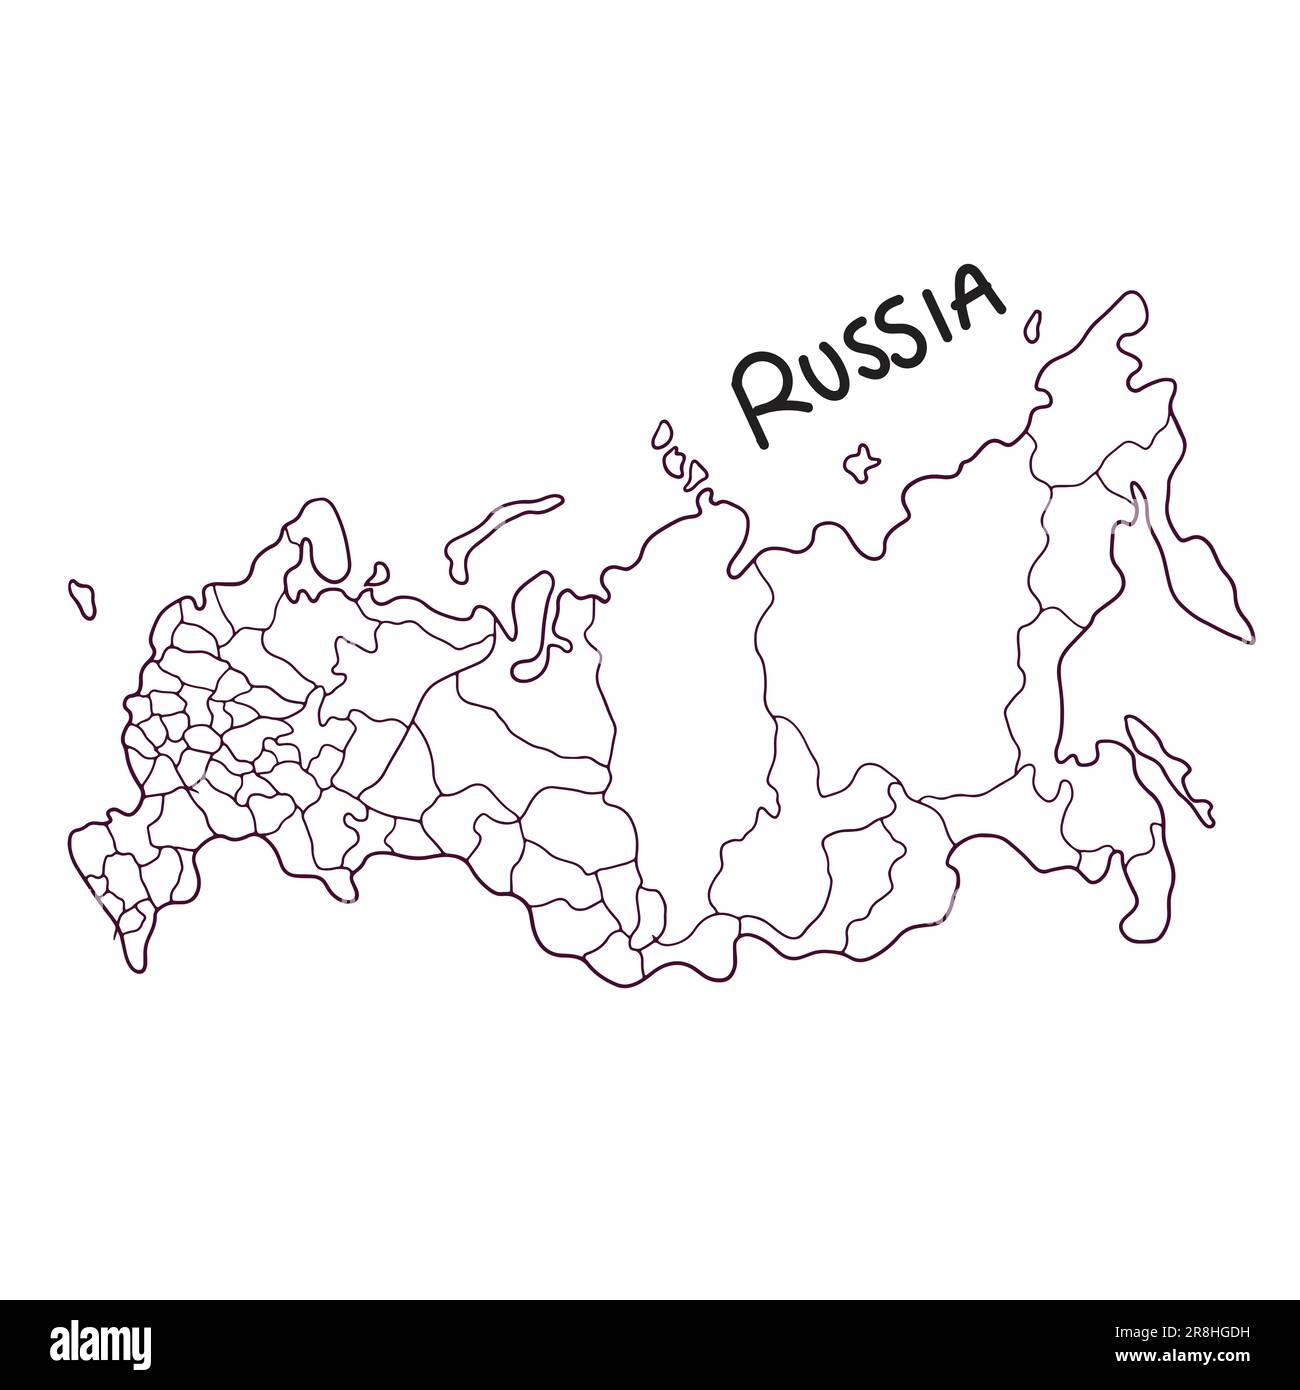 Handgezeichnete Landkarte Russlands Stock Vektor